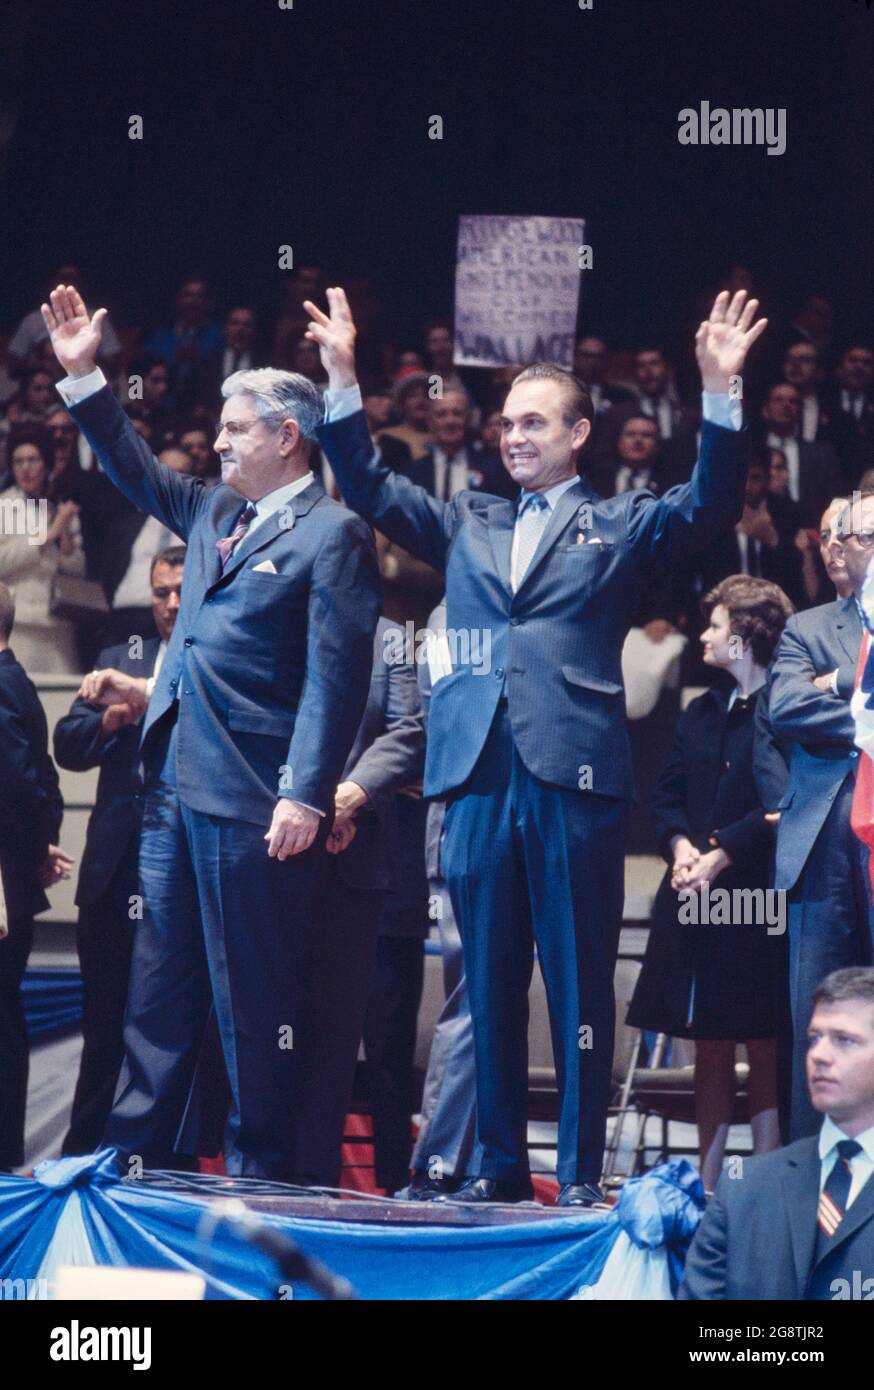 George Wallace et Curtis LeMay sur scène lors de son rassemblement de campagne présidentielle, Madison Square Garden, New York, New York, Etats-Unis, Bernard Gotfryd, octobre 24,1968 Banque D'Images